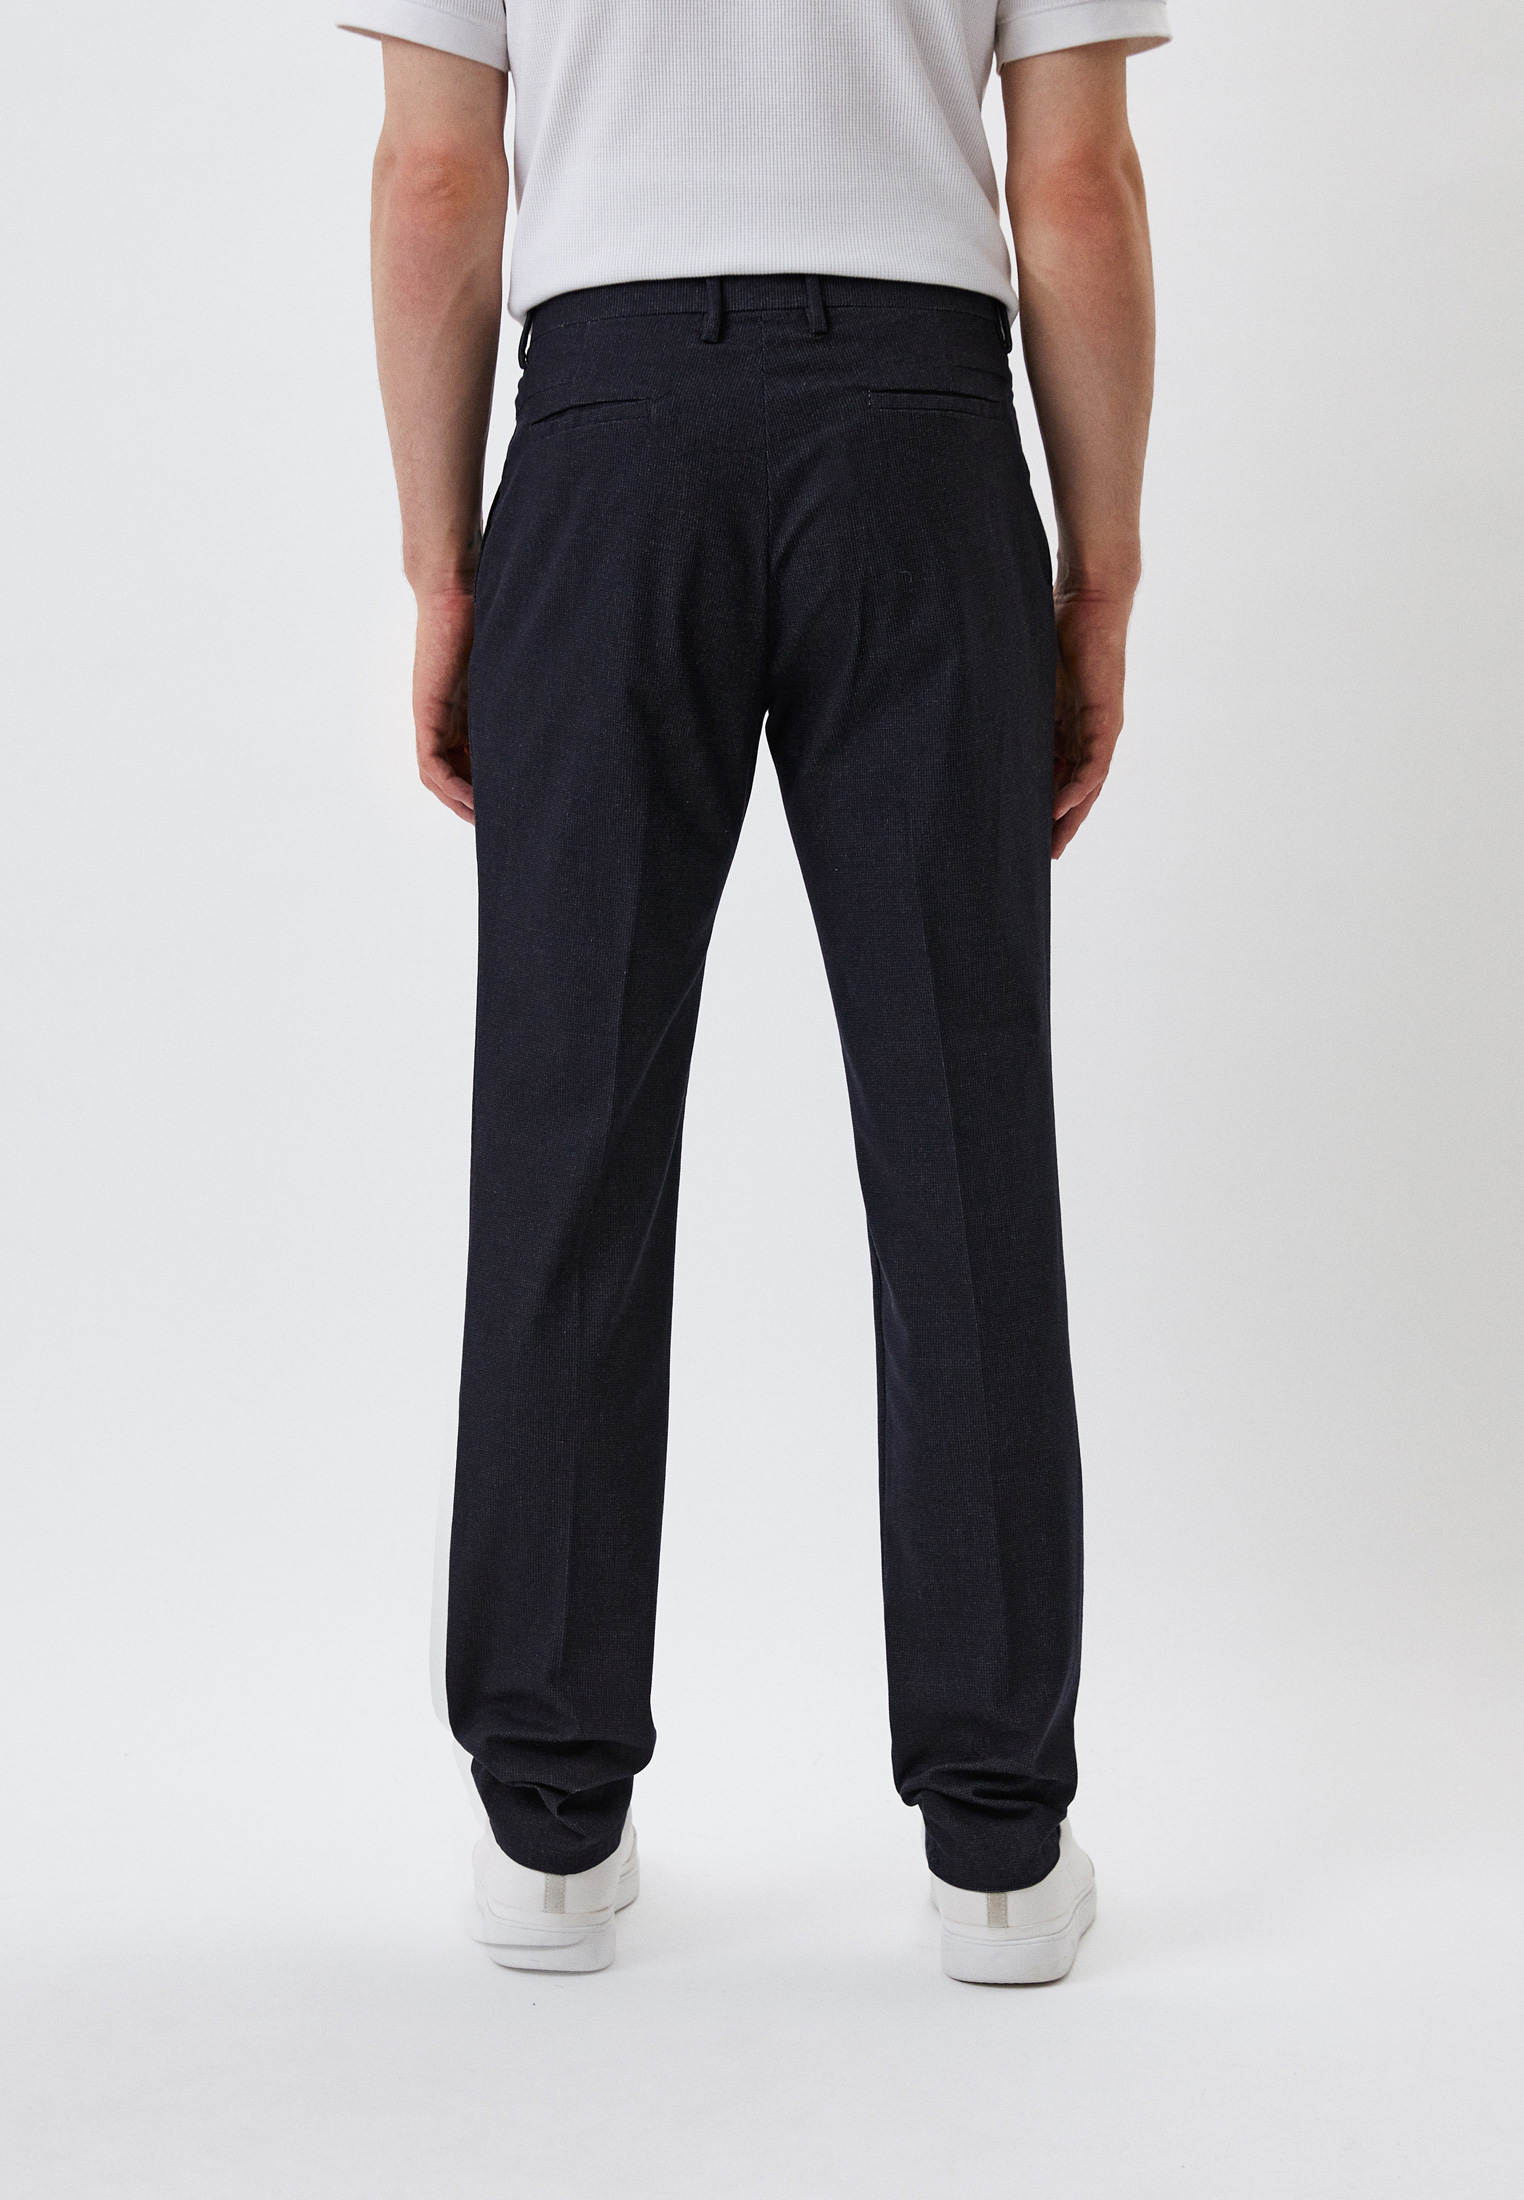 Мужские классические брюки Trussardi (Труссарди) 52P00125-1T005998: изображение 3